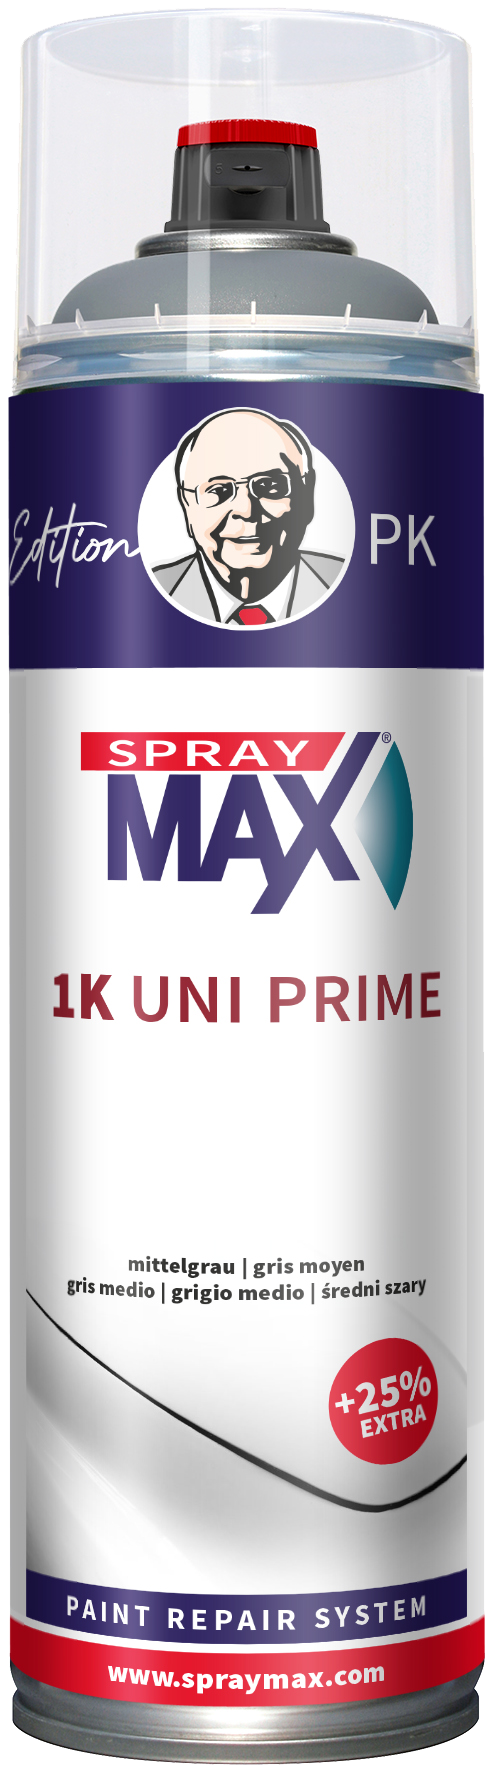 1K Uni Prime